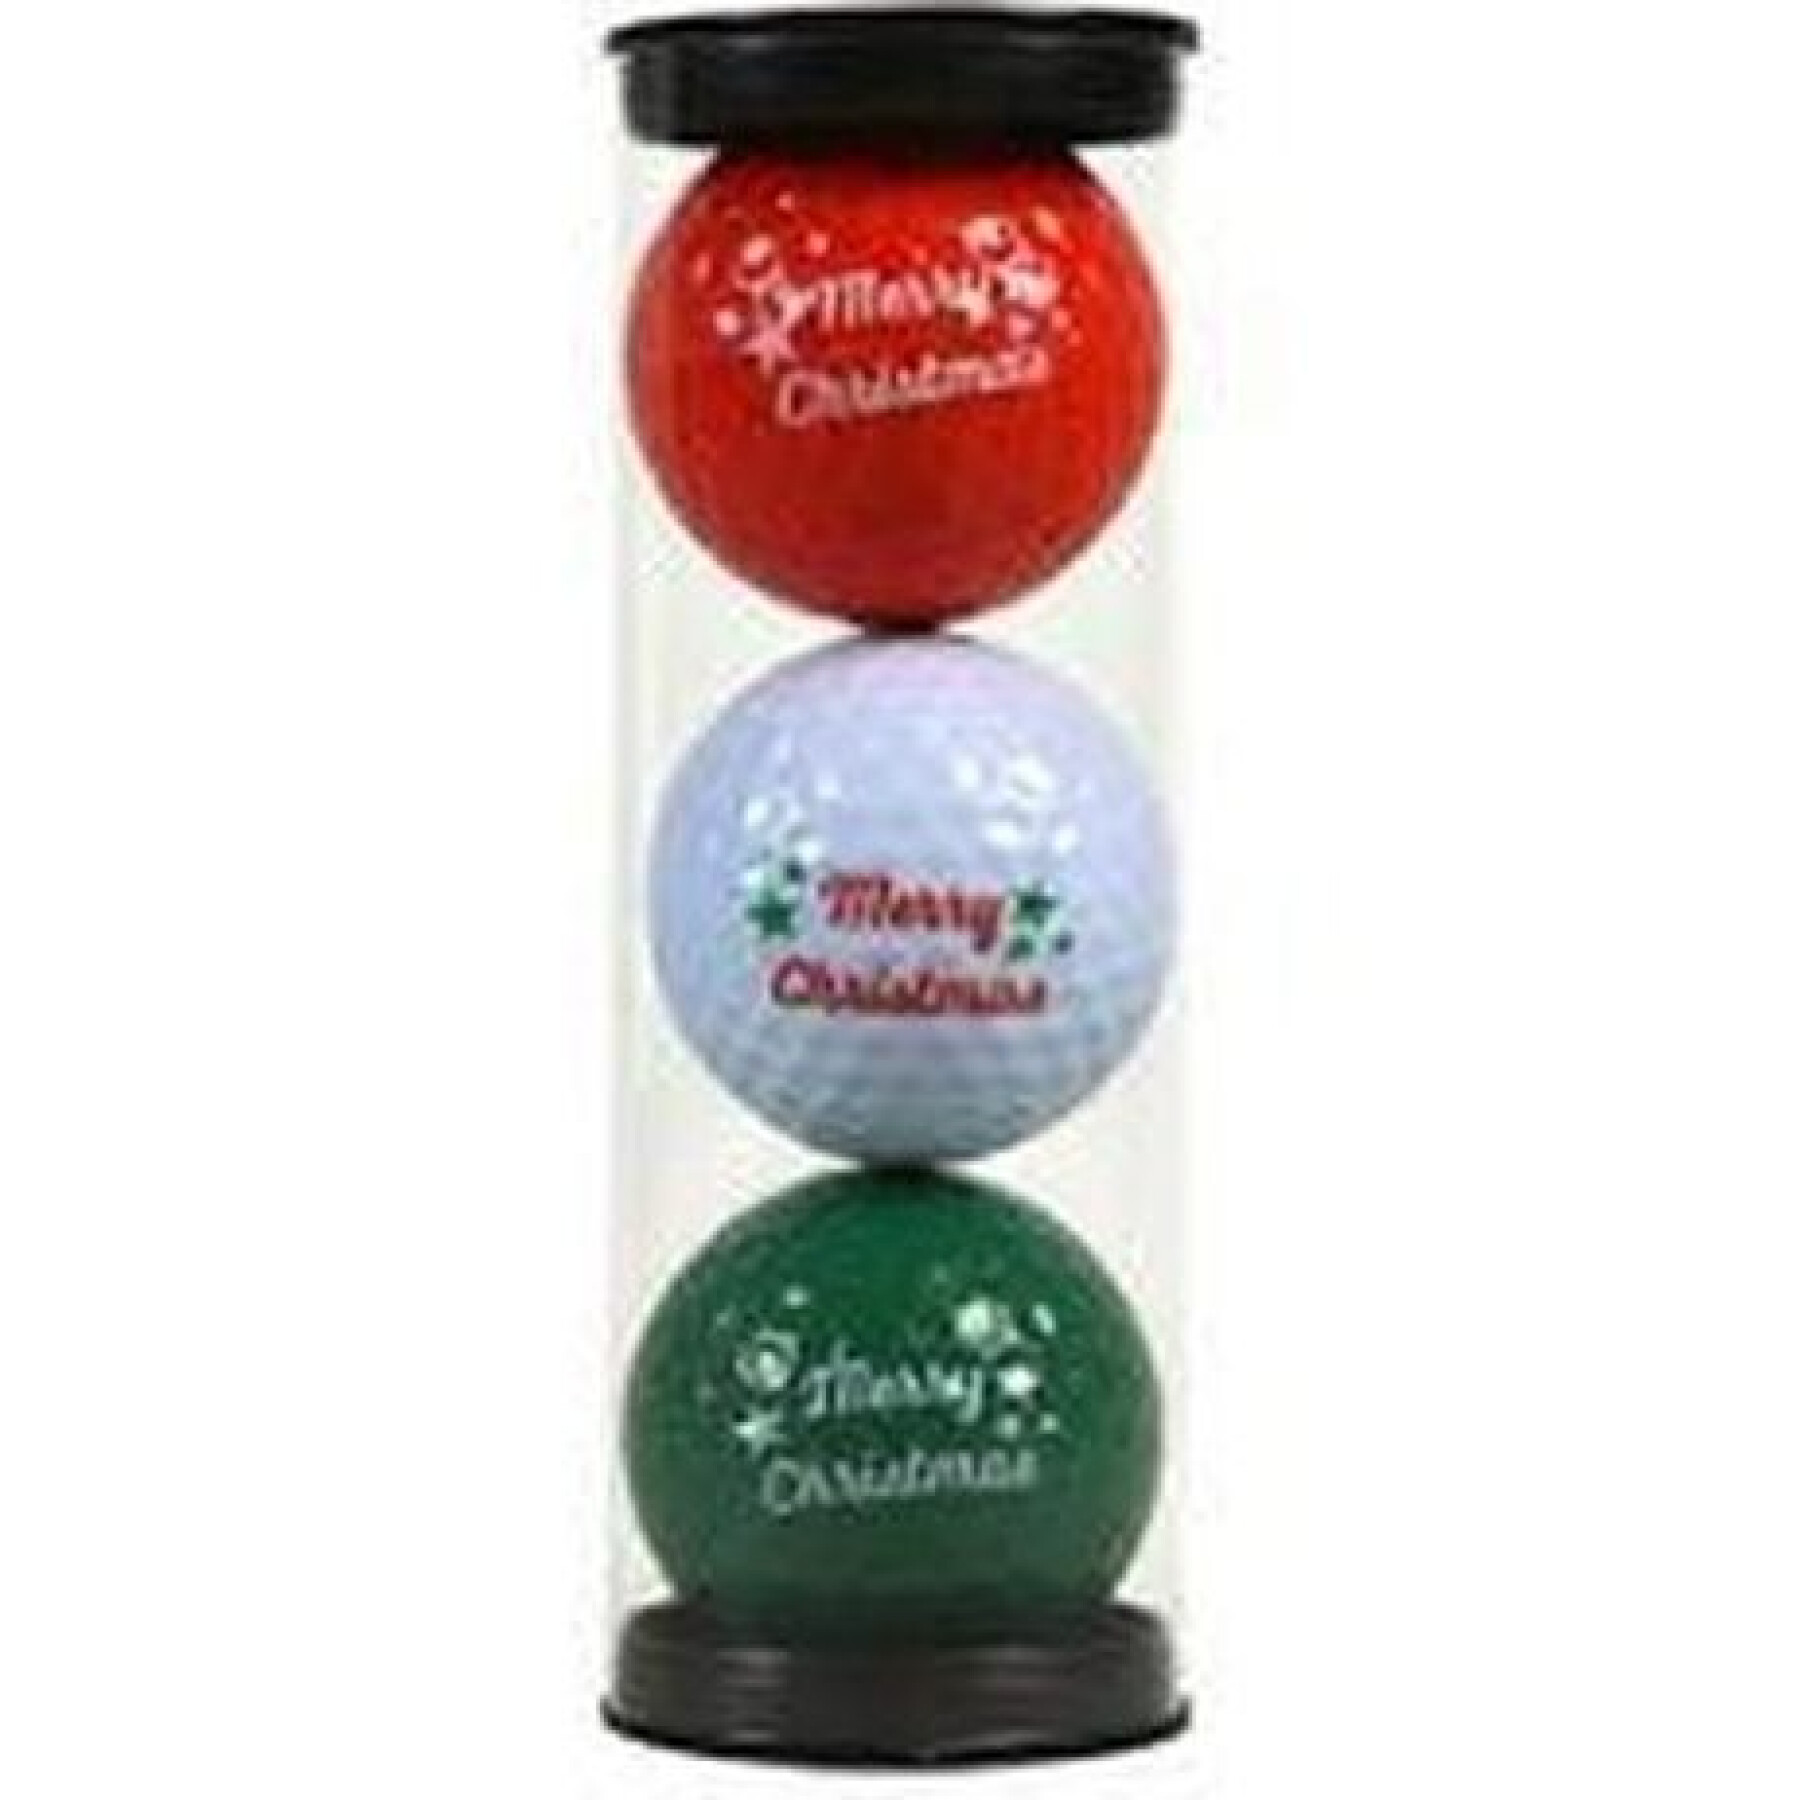 Set of 3 fancy merry x-mas golf balls Legend